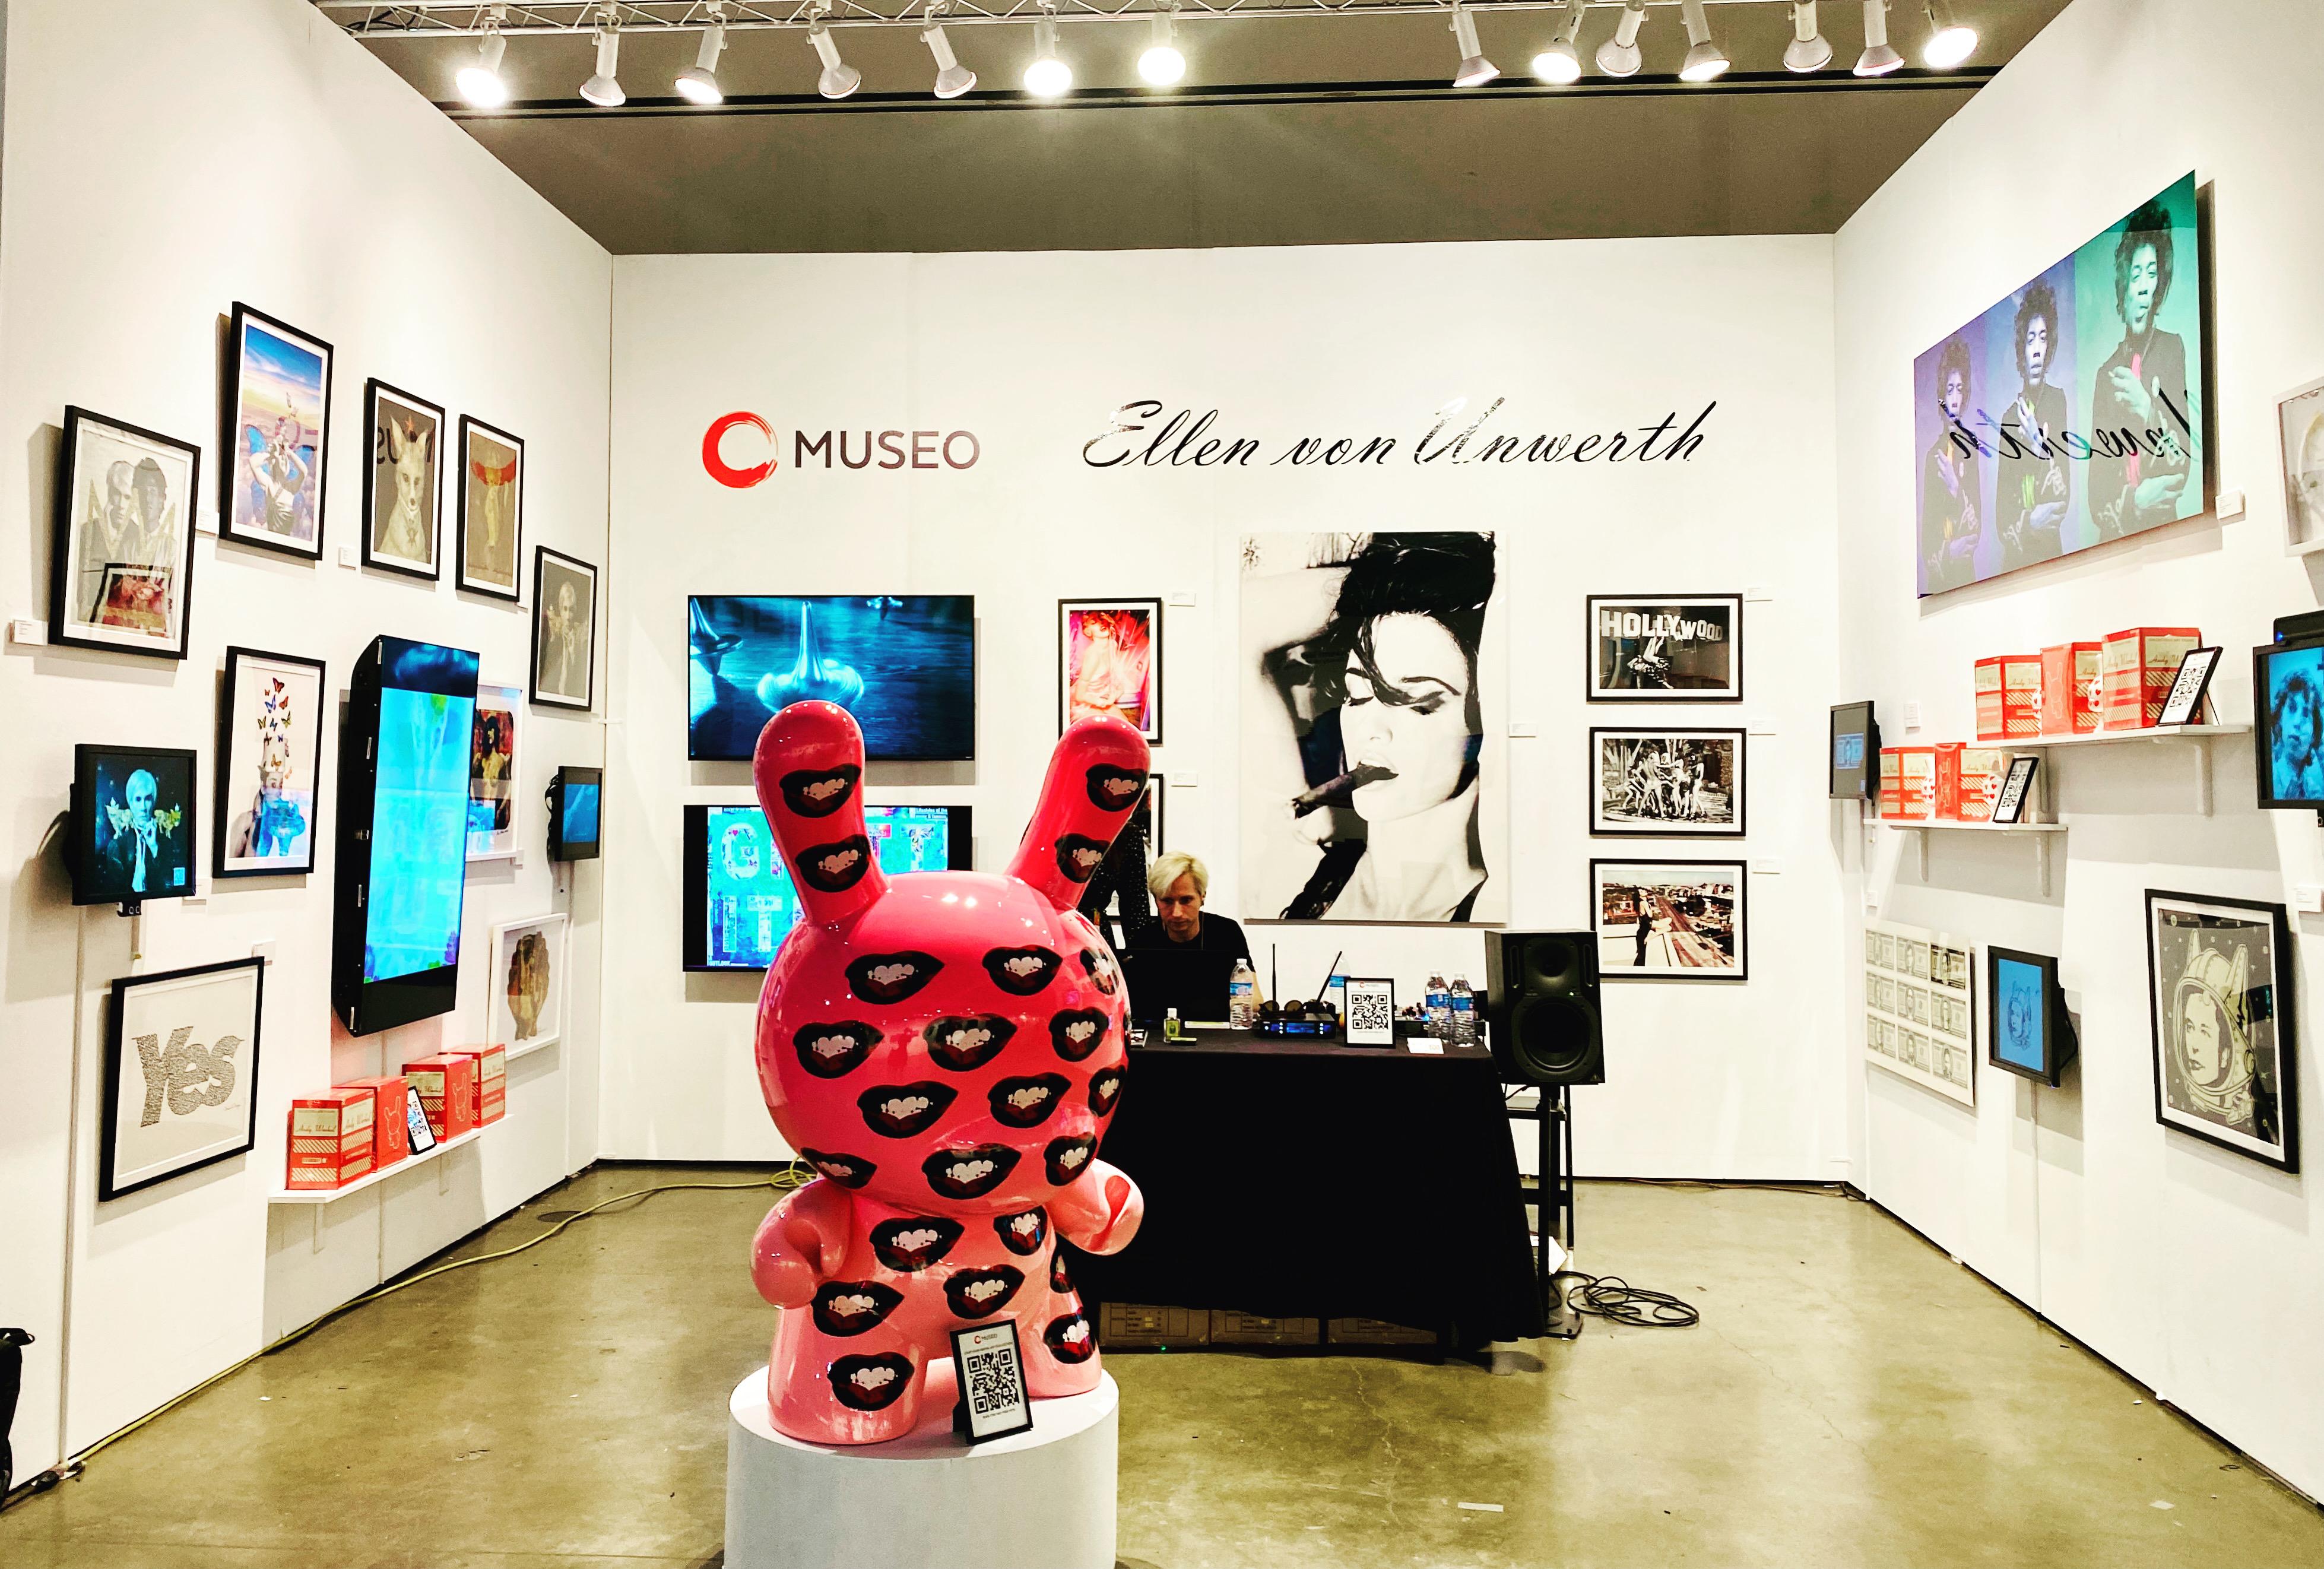 Einzigartige One-OF Dunny-Skulptur von Kid Robot und der Andy Warhol Foundation. Dieser Dunny wurde für das LOVE MUSEUM Pop-Up in L.A. als ultimative Fotogelegenheit für die sozialen Medien entworfen. Die Skulptur misst riesige drei Meter und ist